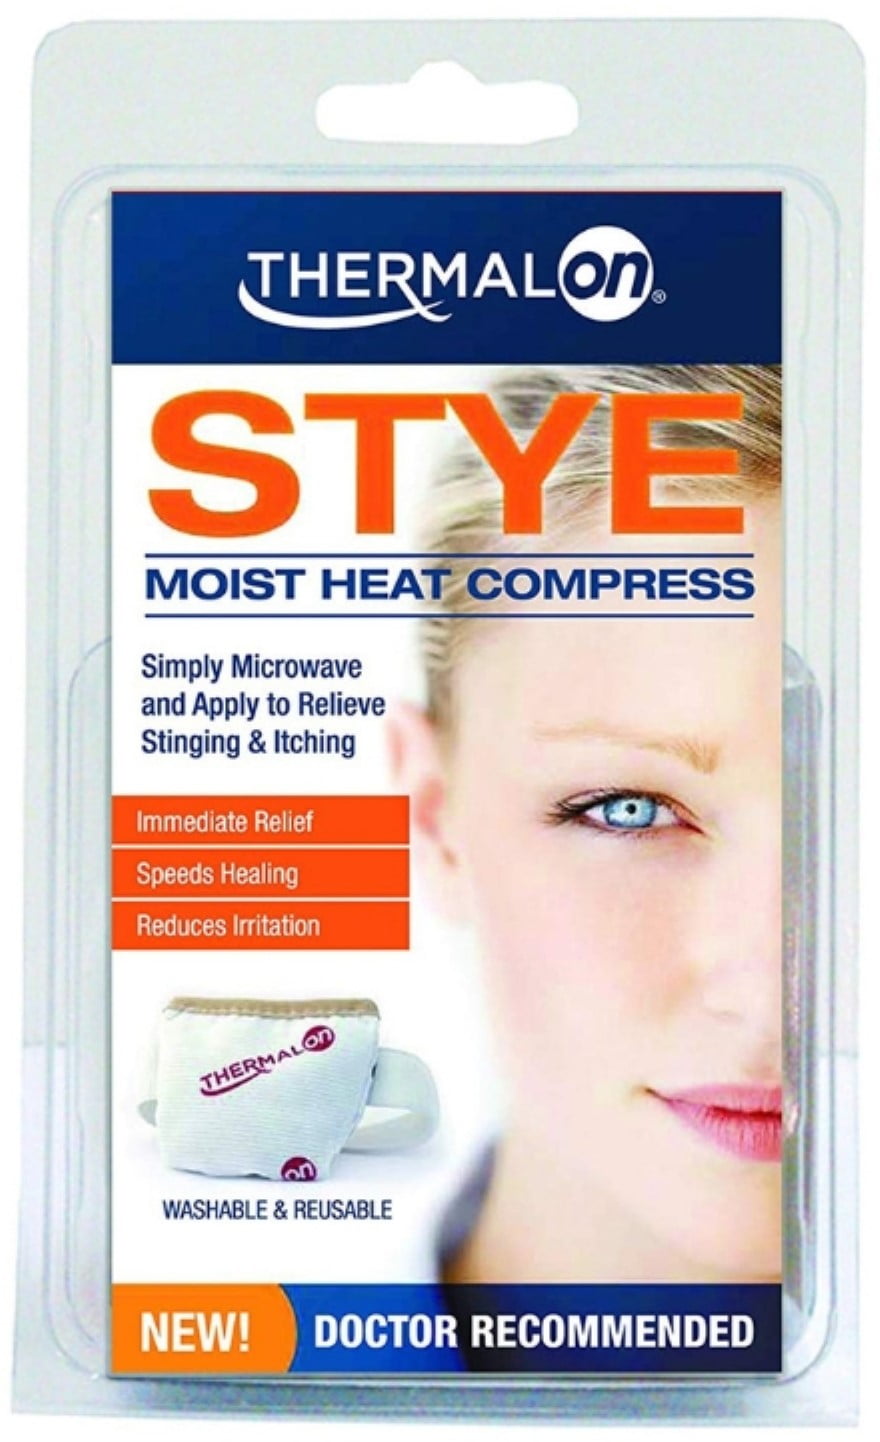 heat compress for migraine